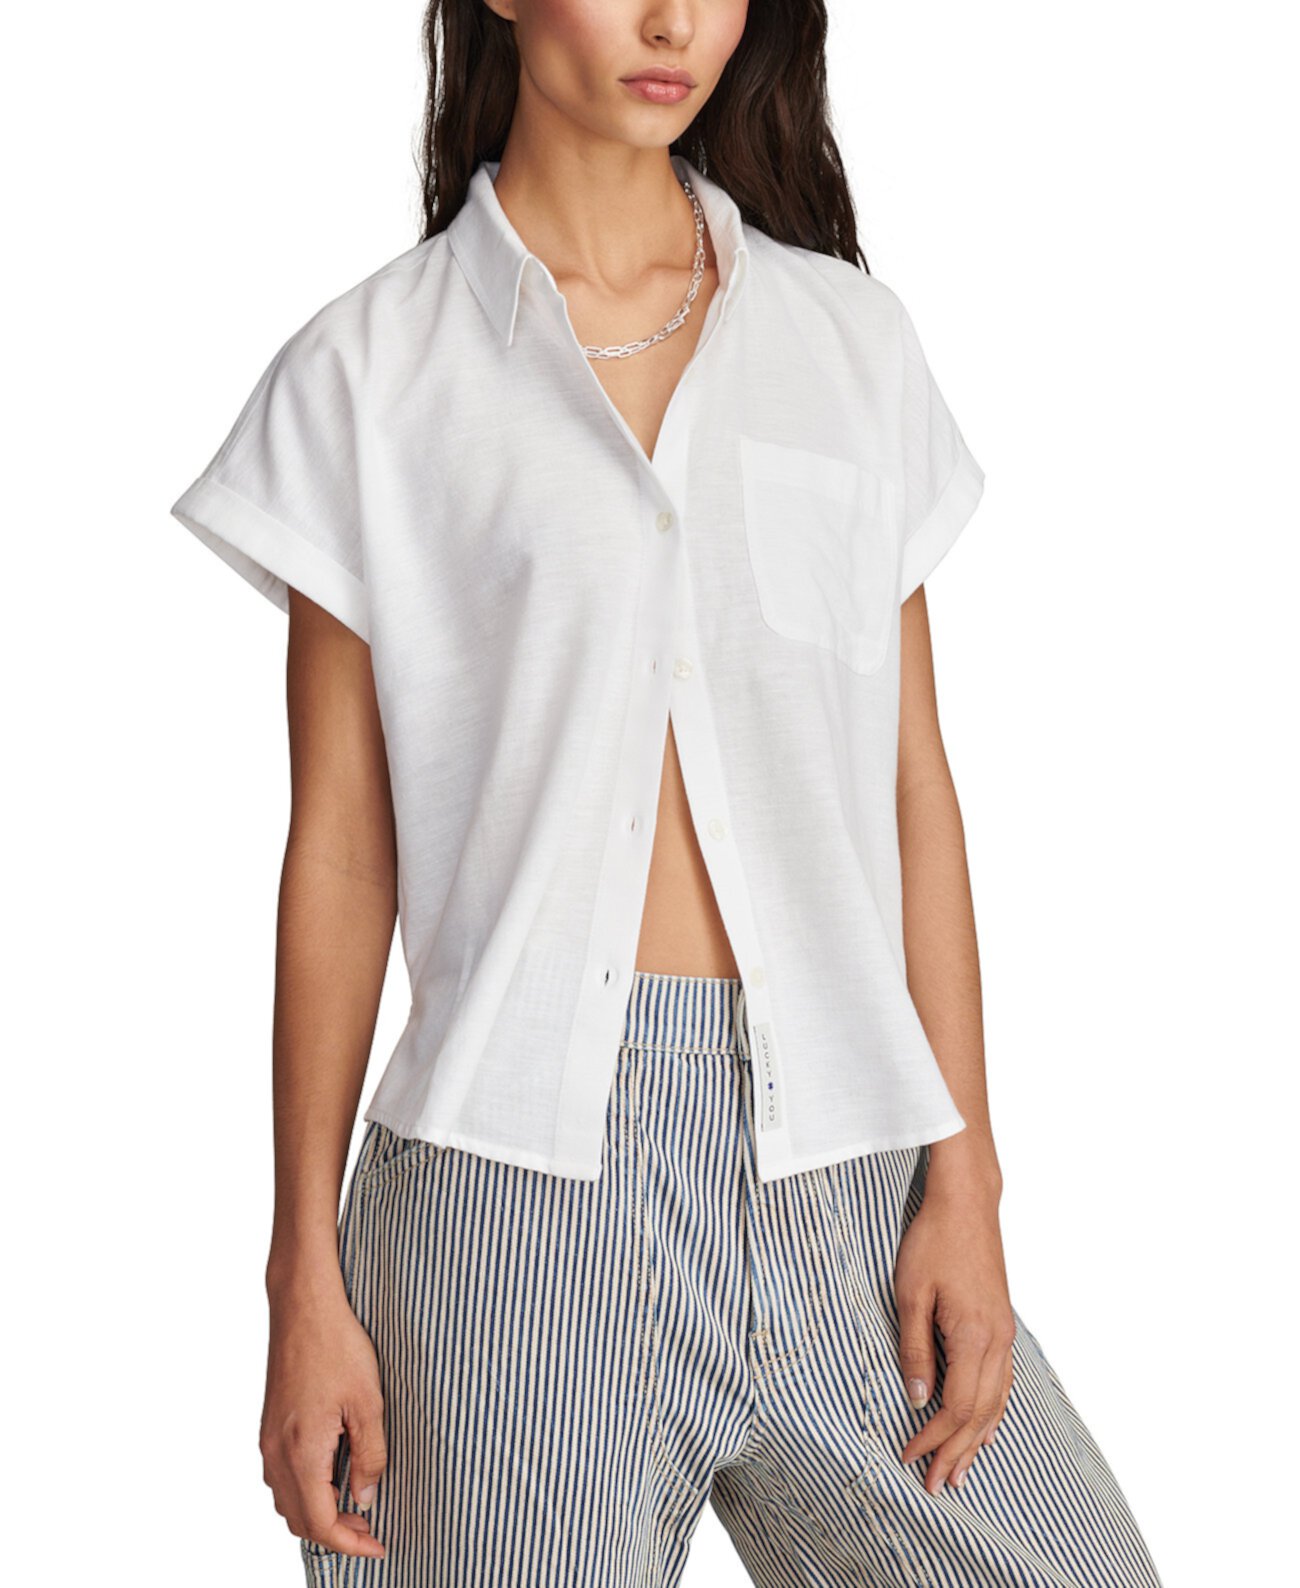 Women's Linen Short-Sleeve Button-Down Shirt Lucky Brand